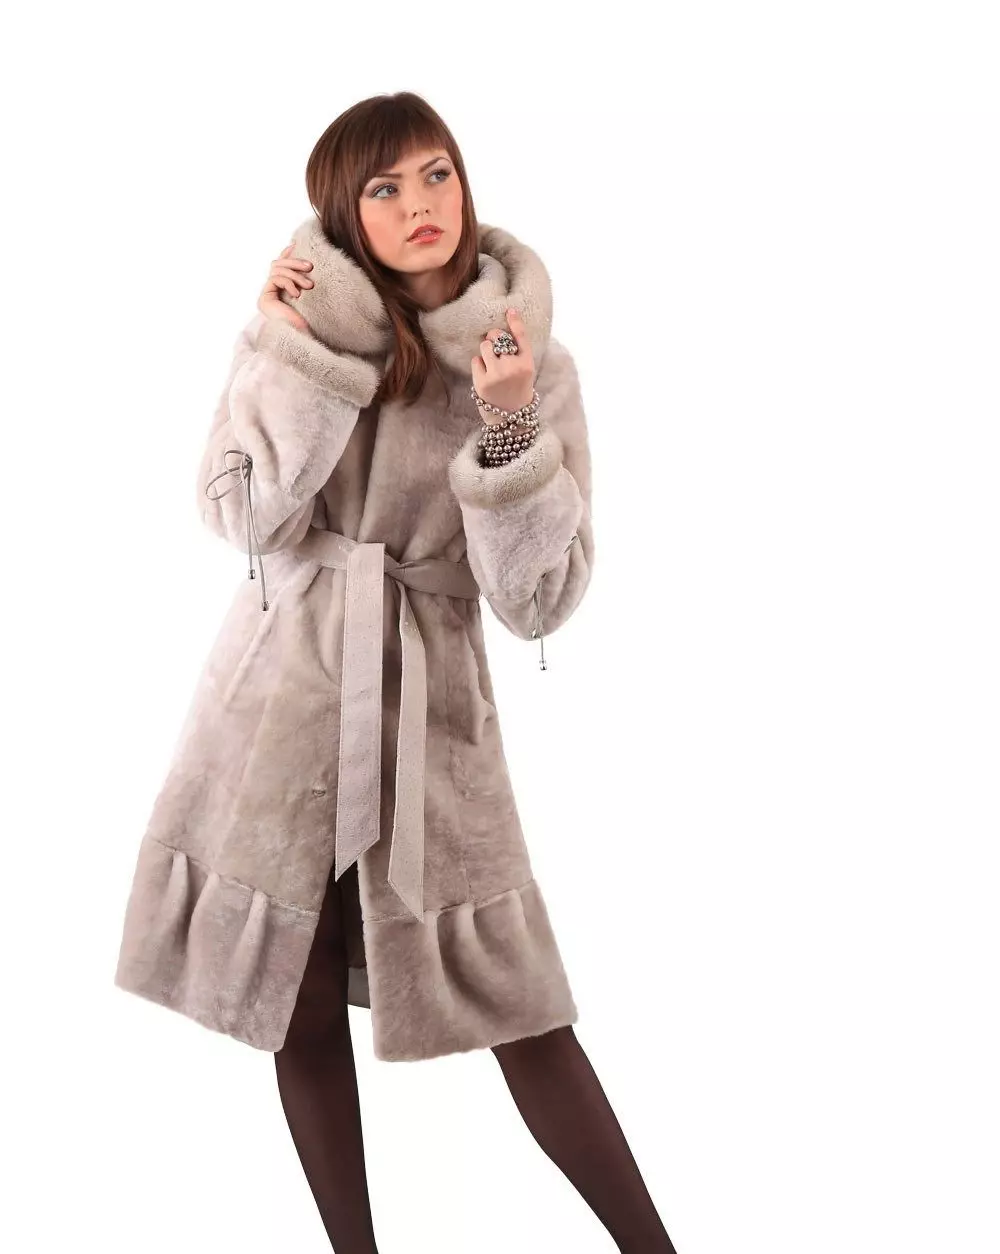 Pyatigorsky Coats de peles (79 fotos): Modelos de Nutria Fur Factory en Pyatigorsk, comentarios 764_13